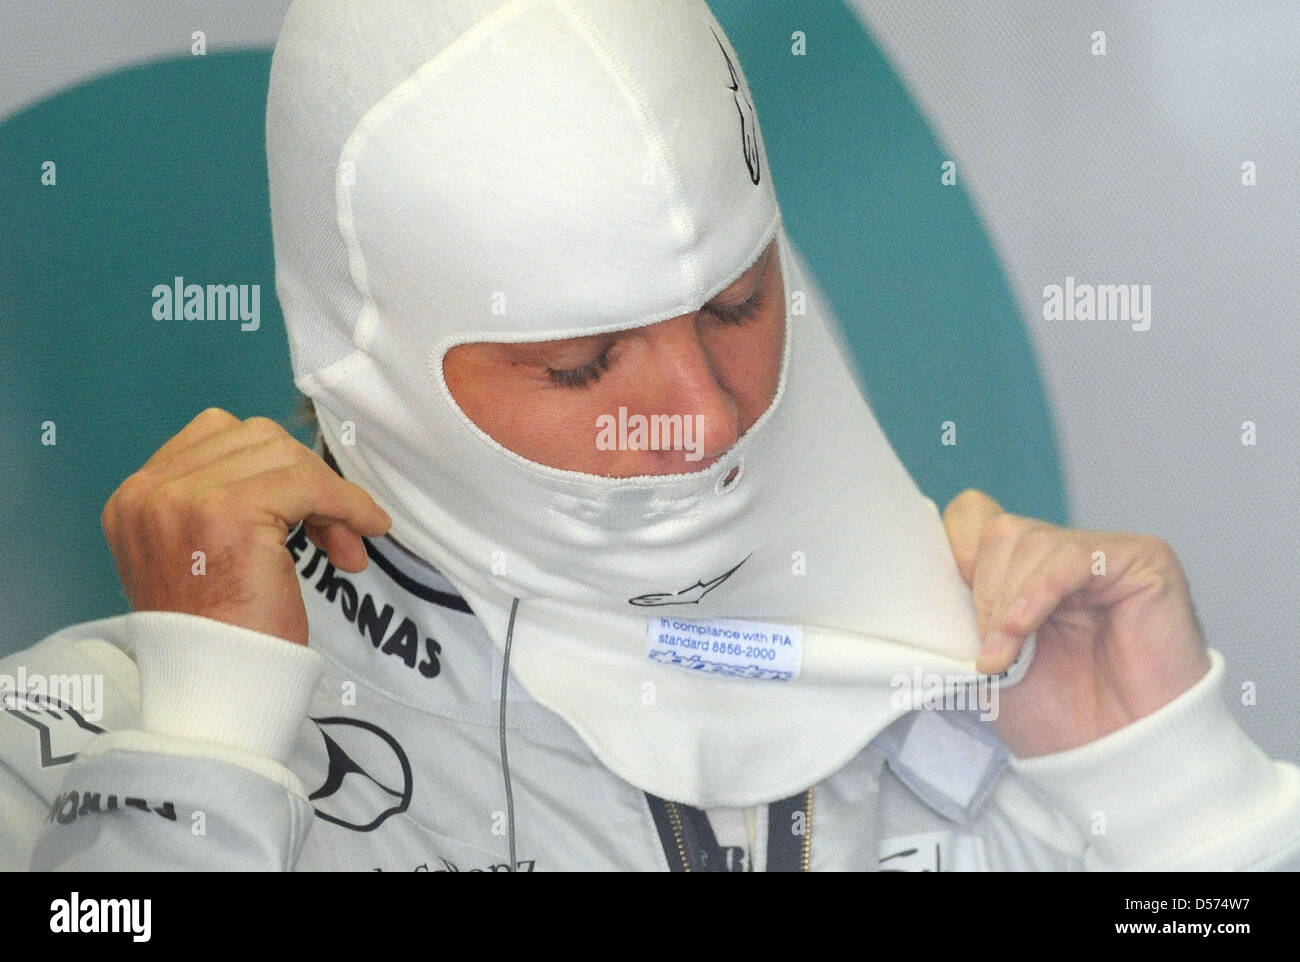 Il tedesco Nico Rosberg della Mercedes GP nel suo box durante la prima sessione di prove per il Gran Premio di Cina a Shanghai nel Circuito Internazionale di Shanghai, in Cina, 16 aprile 2010. Il Gran Premio di Cina si terrà il 18 aprile 2010. Foto: Peter Steffen Foto Stock